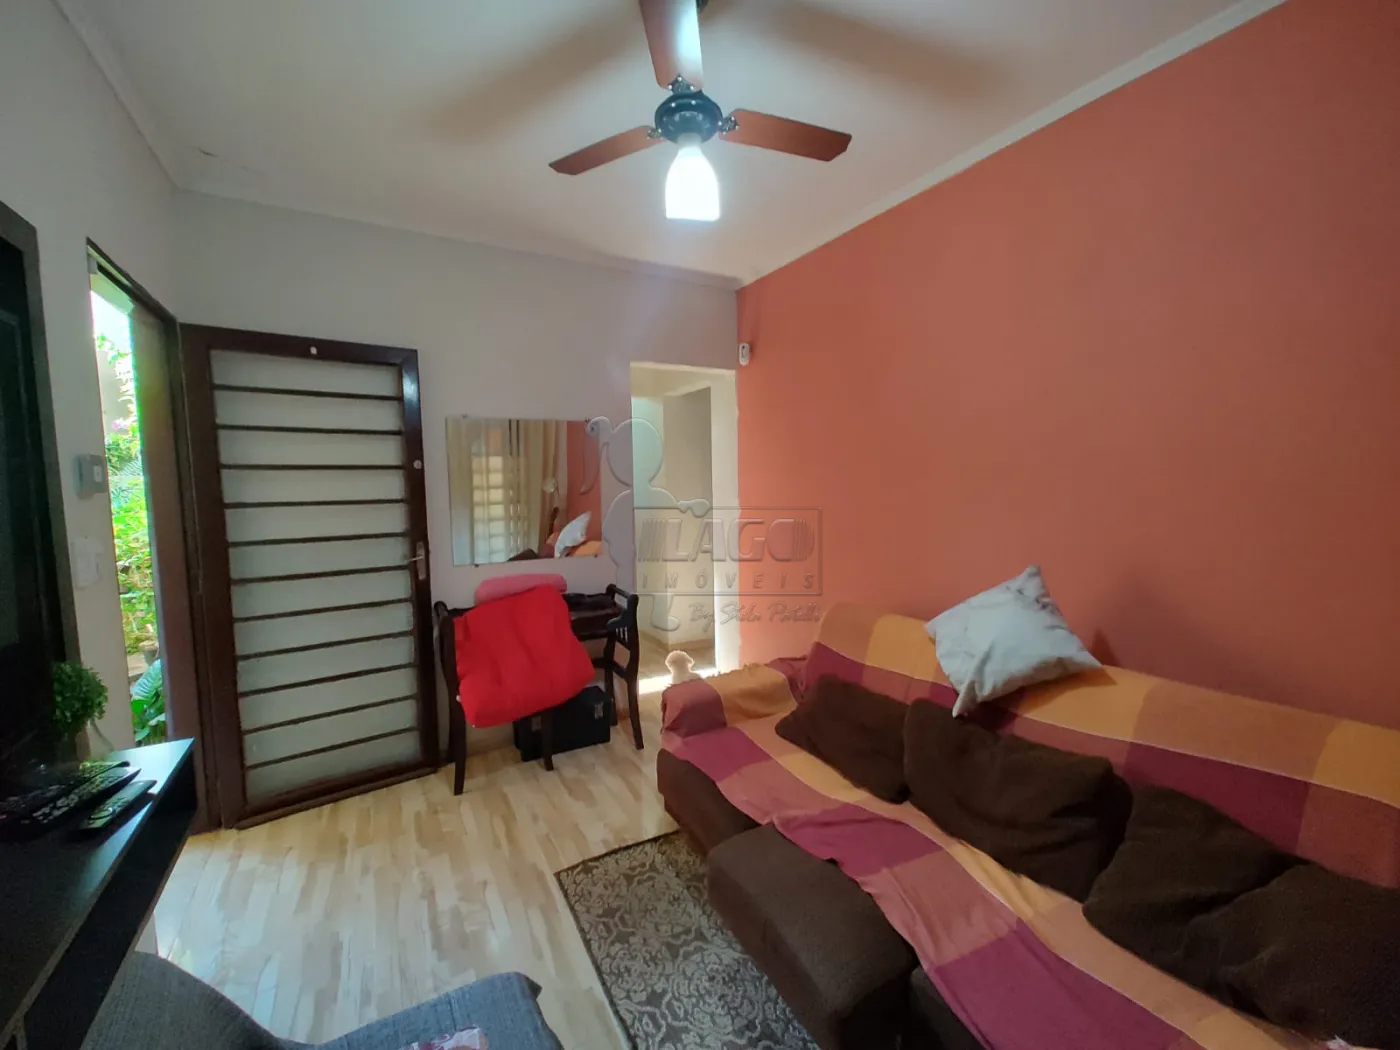 Comprar Casa / Padrão em Ribeirão Preto R$ 350.000,00 - Foto 3